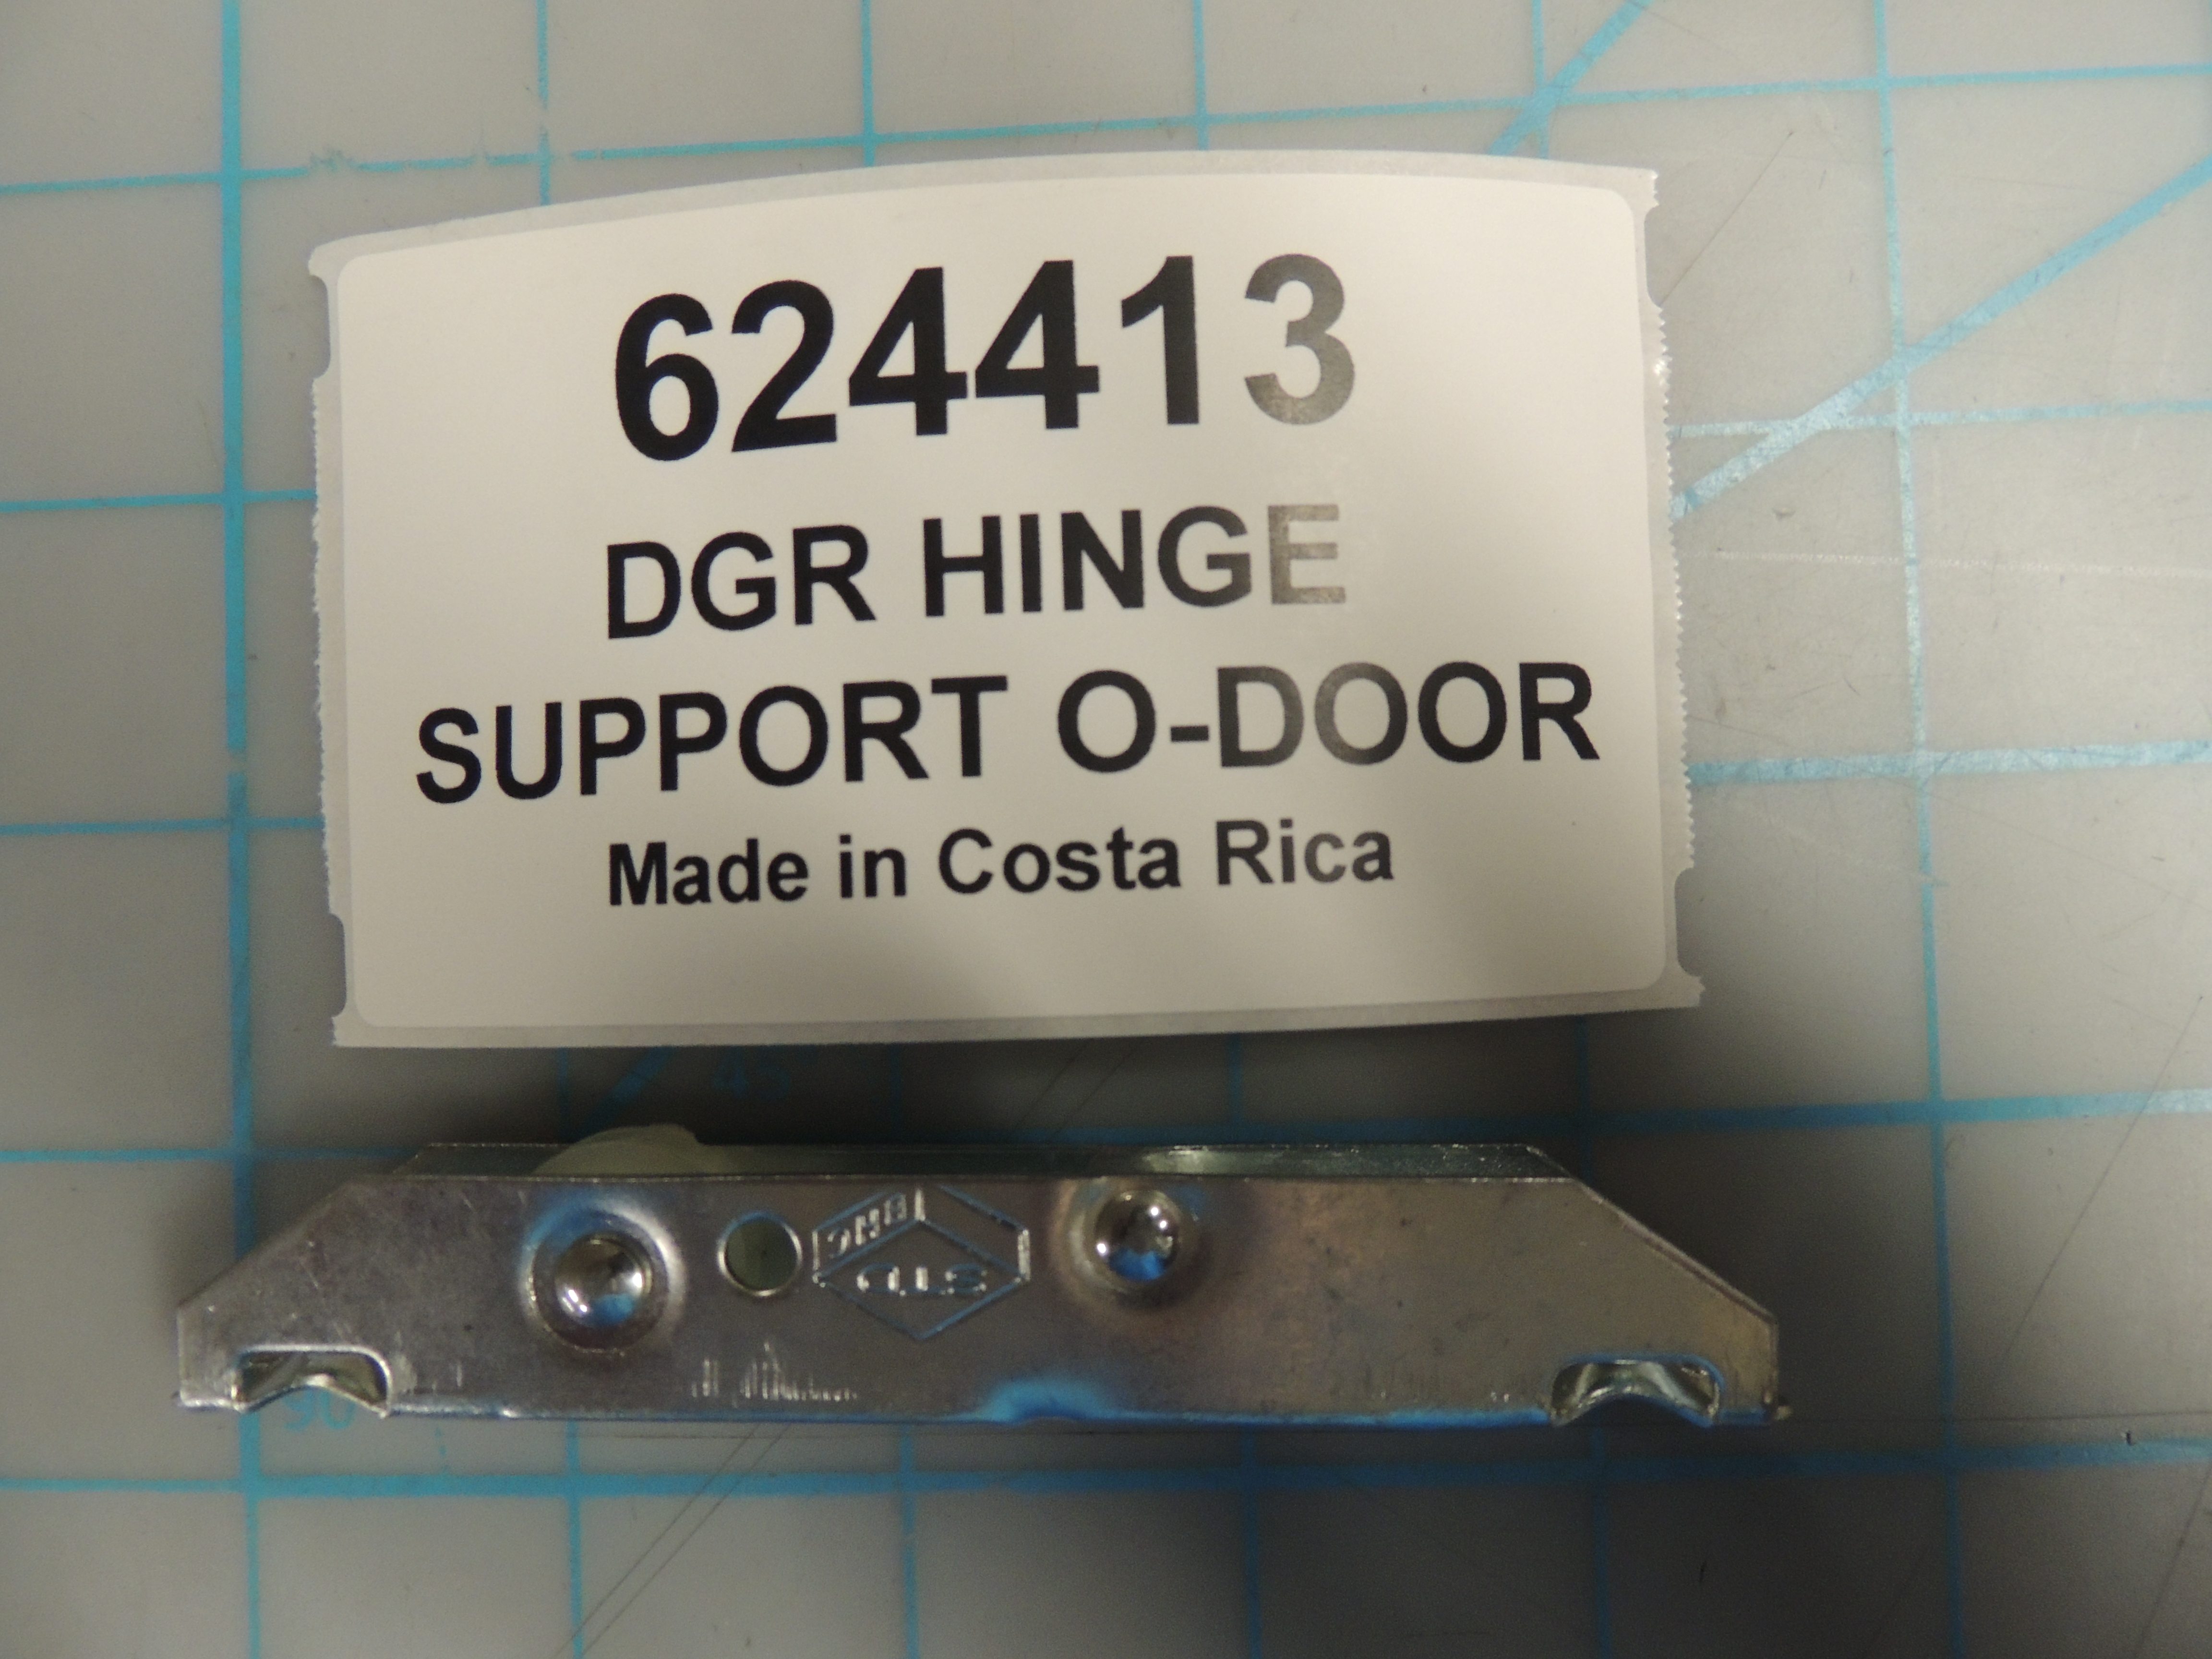 DGR HINGE SUPPORT O-DOOR